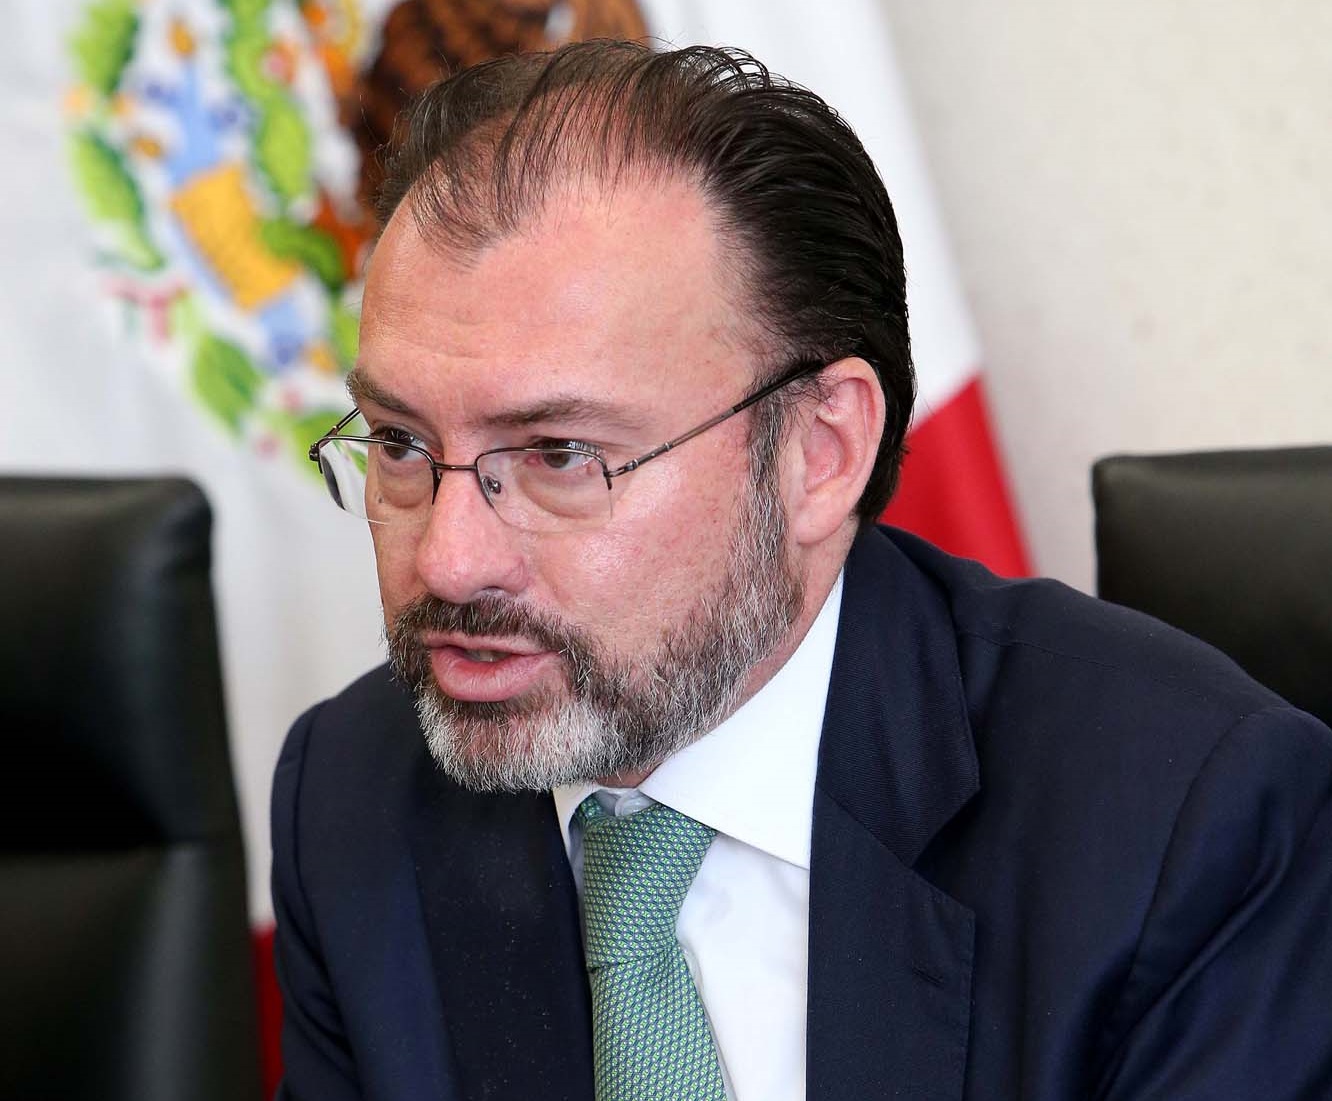 Luis Videgaray participa en una reunión; el funcionario inaugura la Semana Árabe en México 2017 (NTX, archivo)